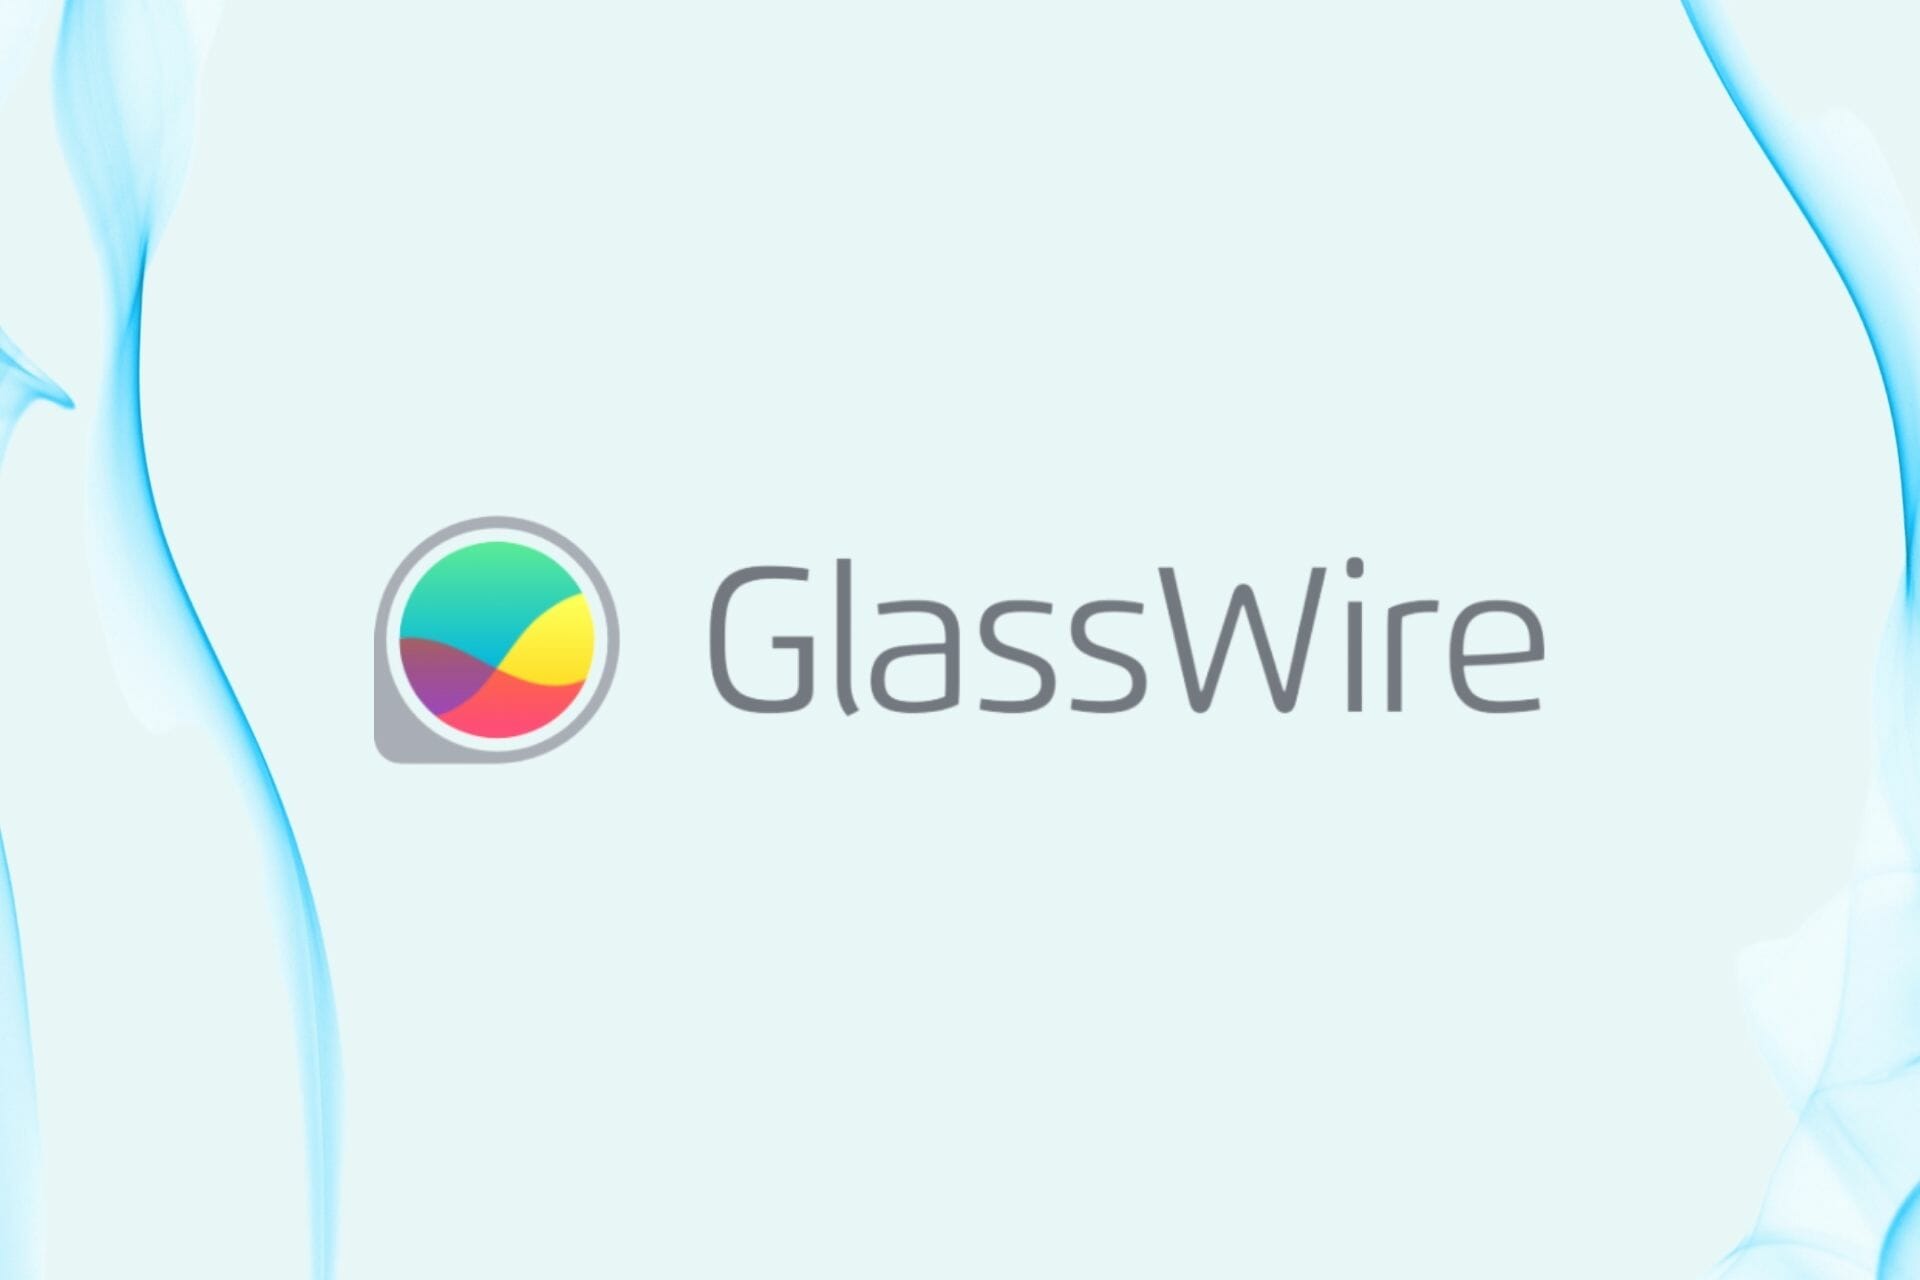 GlassWire best deals